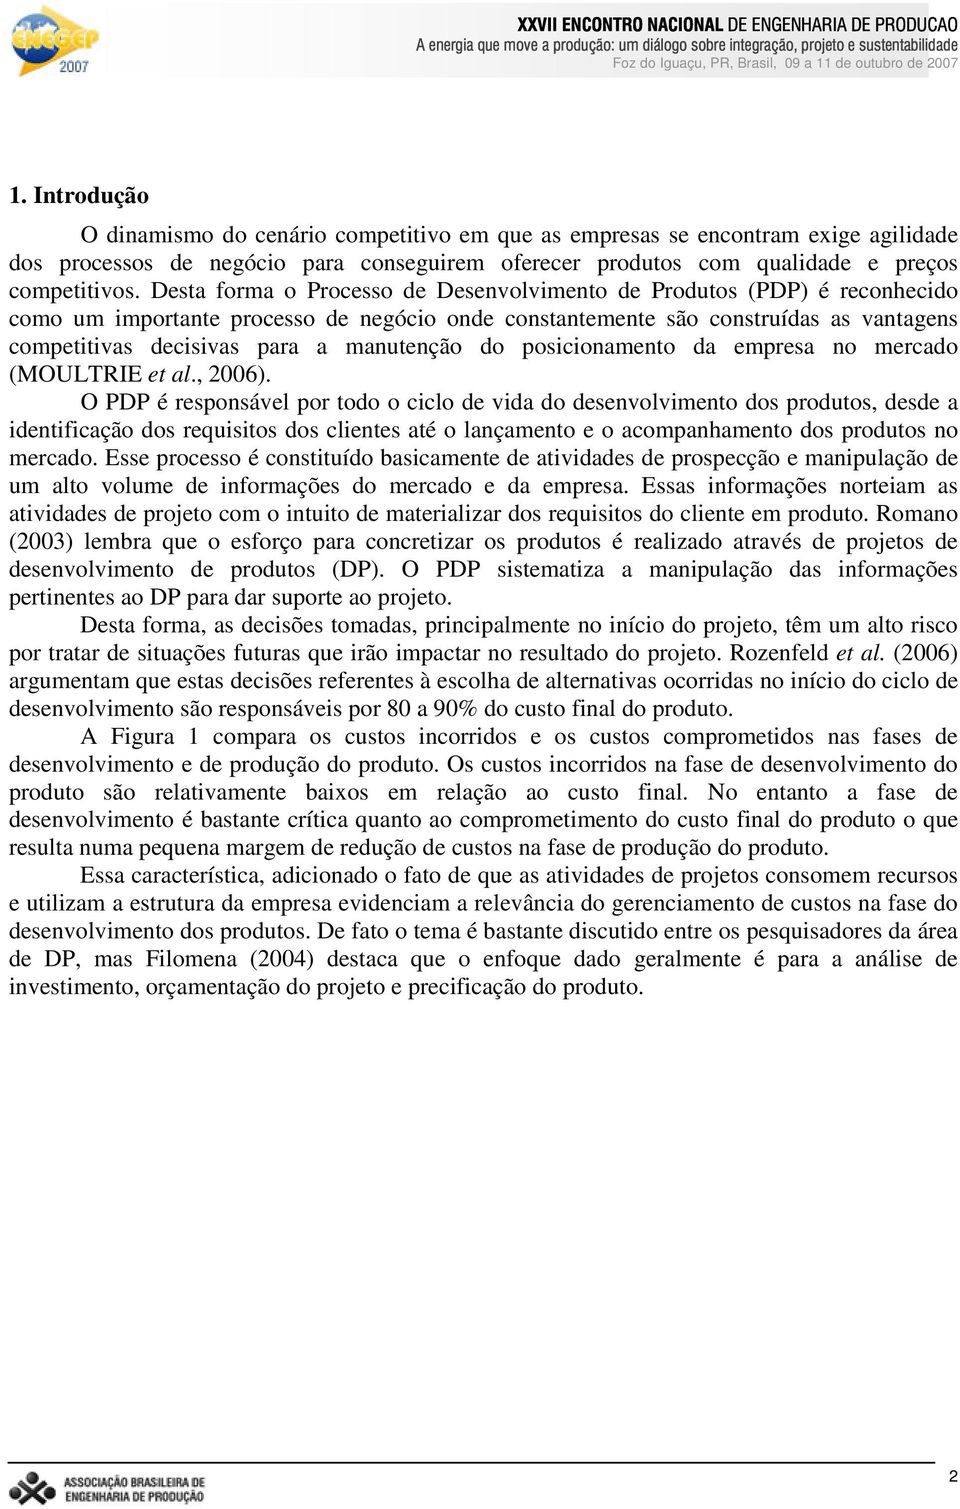 manutenção do posicionamento da empresa no mercado (MOULTRIE et al., 2006).